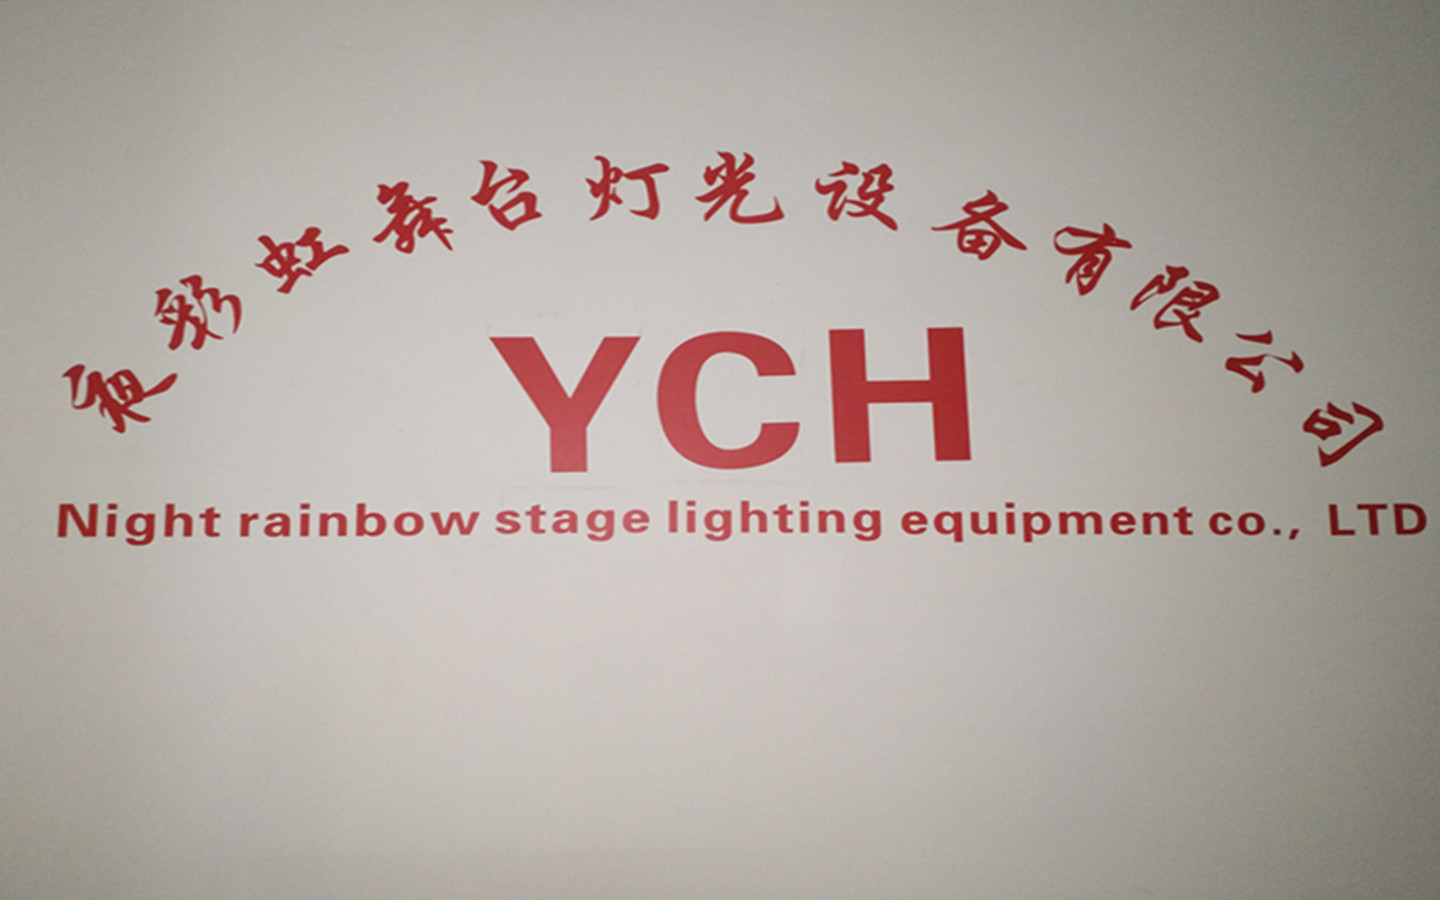 广州市夜彩虹舞台灯光设备有限公司